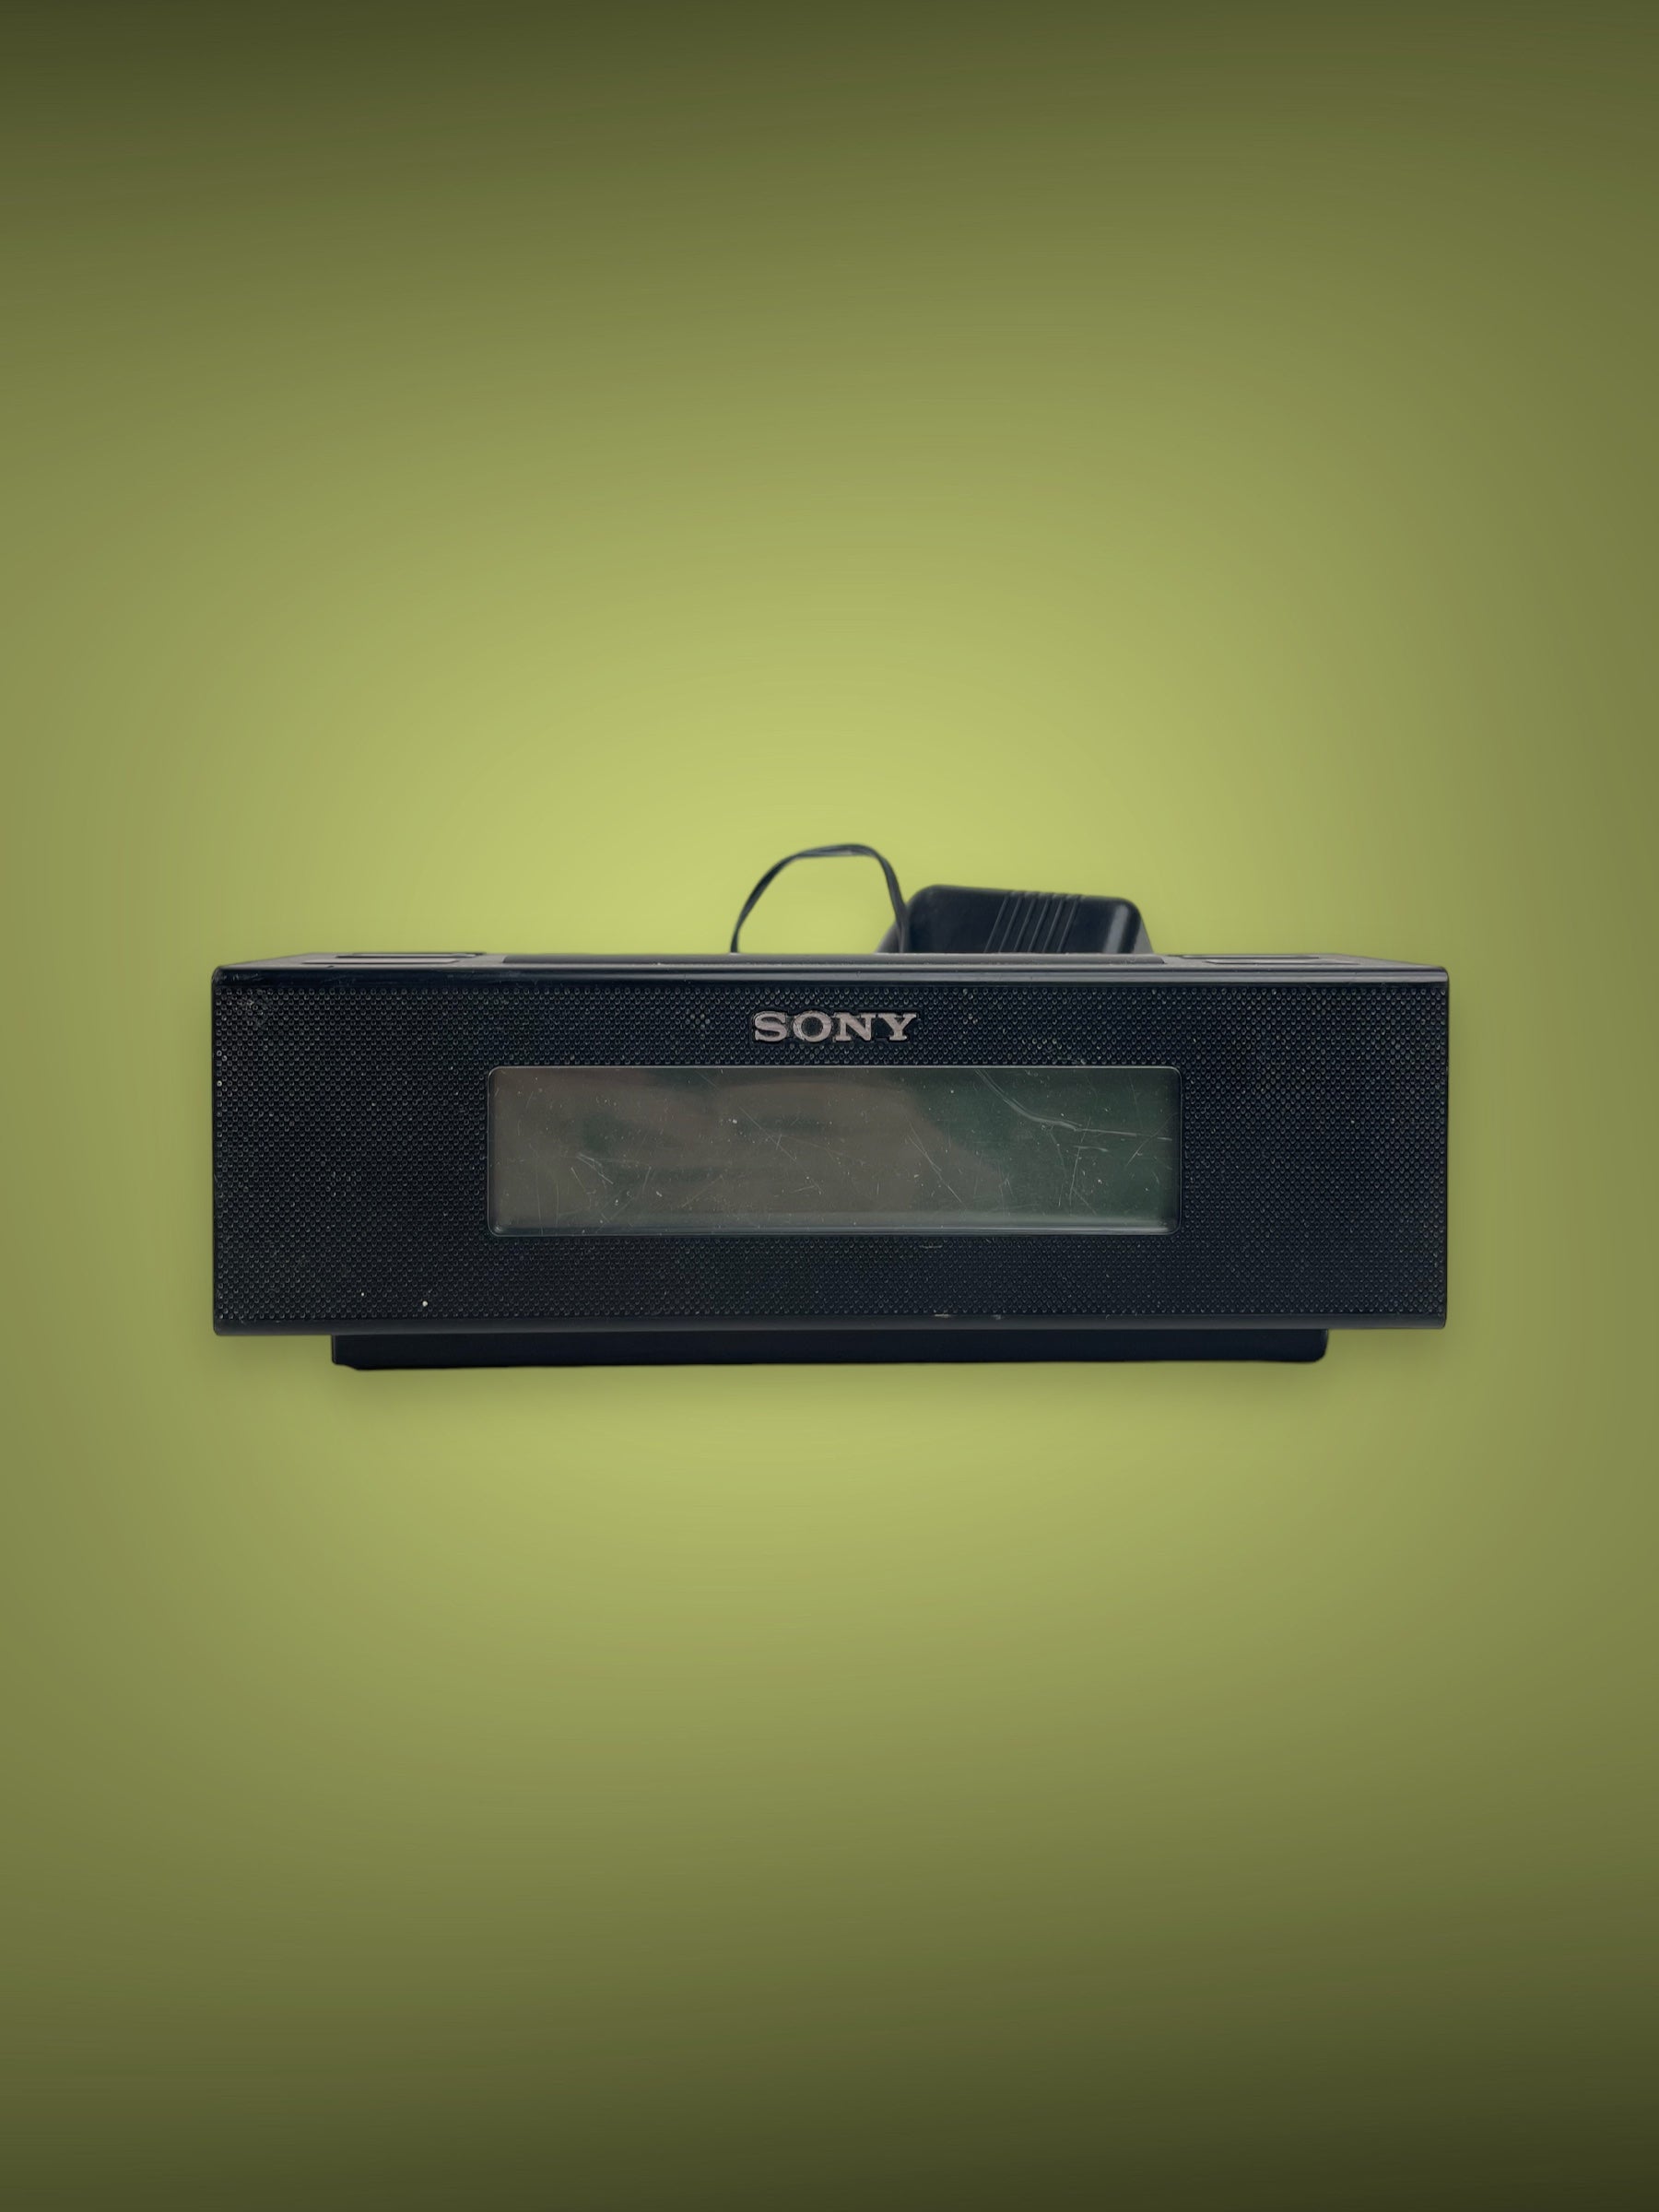 Sony ICF-C707 Digital AM/FM Clock Radio